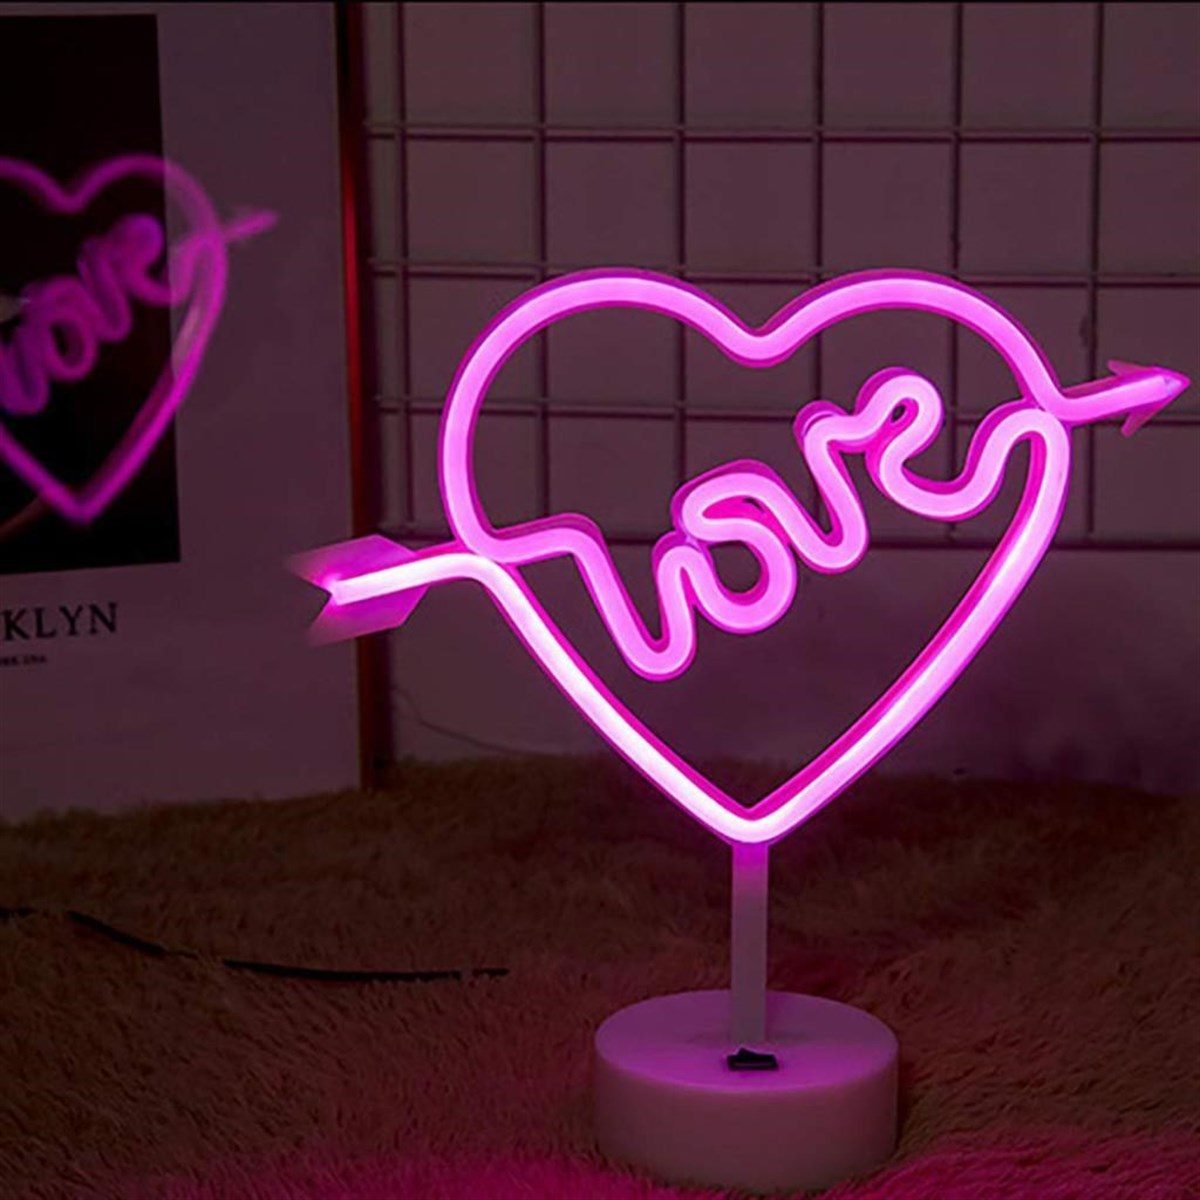 CLZ192 Kalpli Love Yazılı Dekoratif Neon Pilli Led Masa ve Gece Lambası (4172)